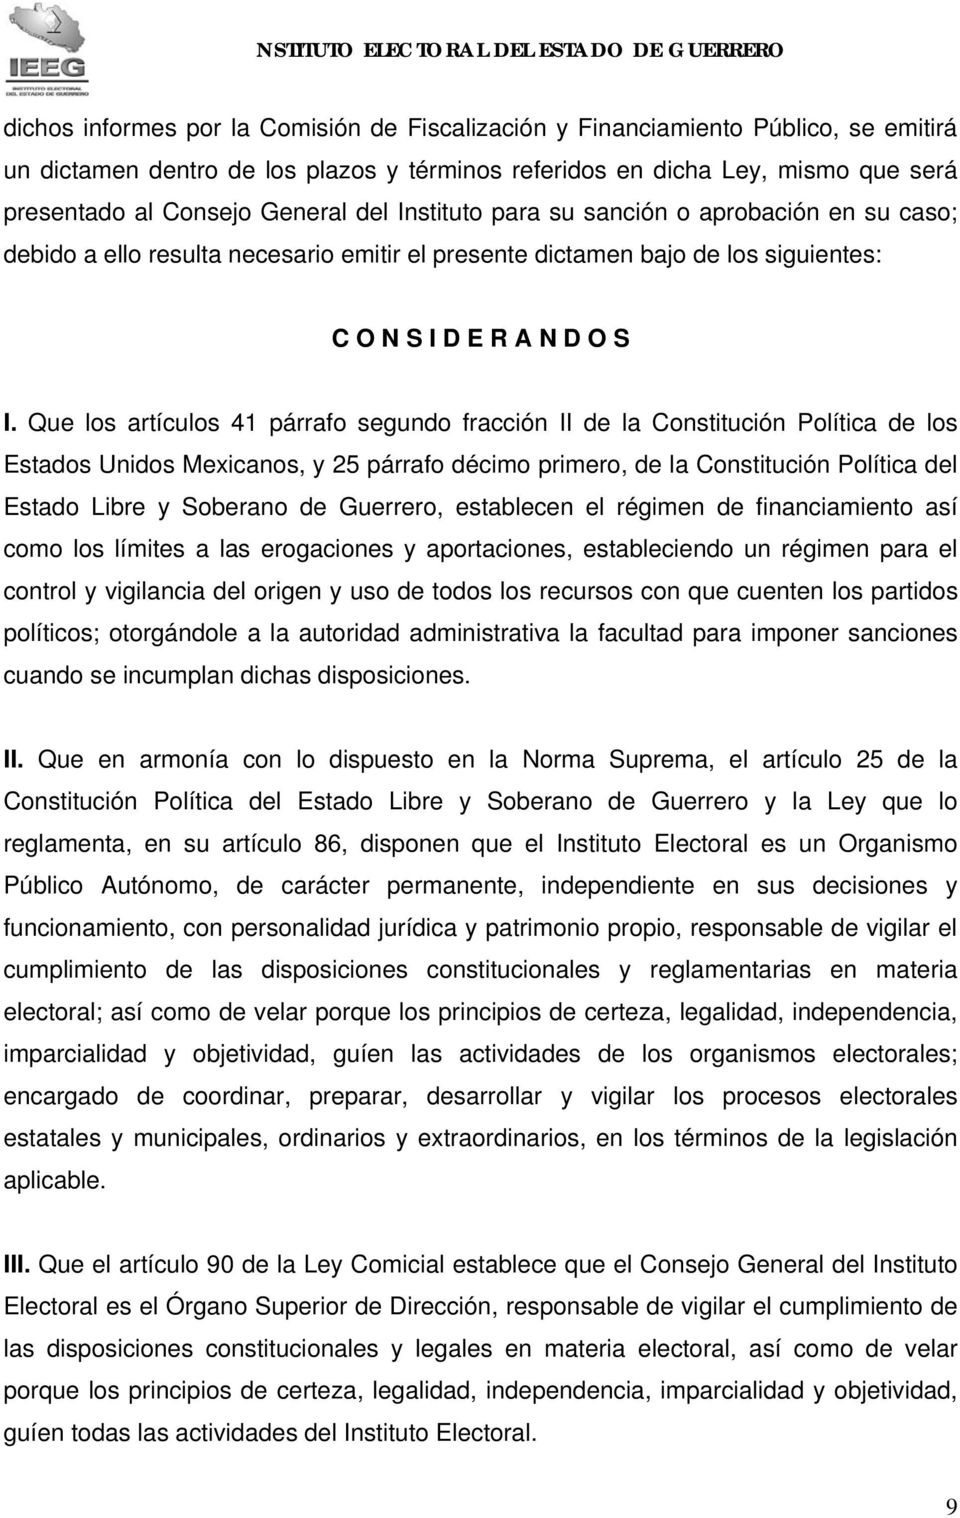 Que los artículos 41 párrafo segundo fracción II de la Constitución Política de los Estados Unidos Mexicanos, y 25 párrafo décimo primero, de la Constitución Política del Estado Libre y Soberano de